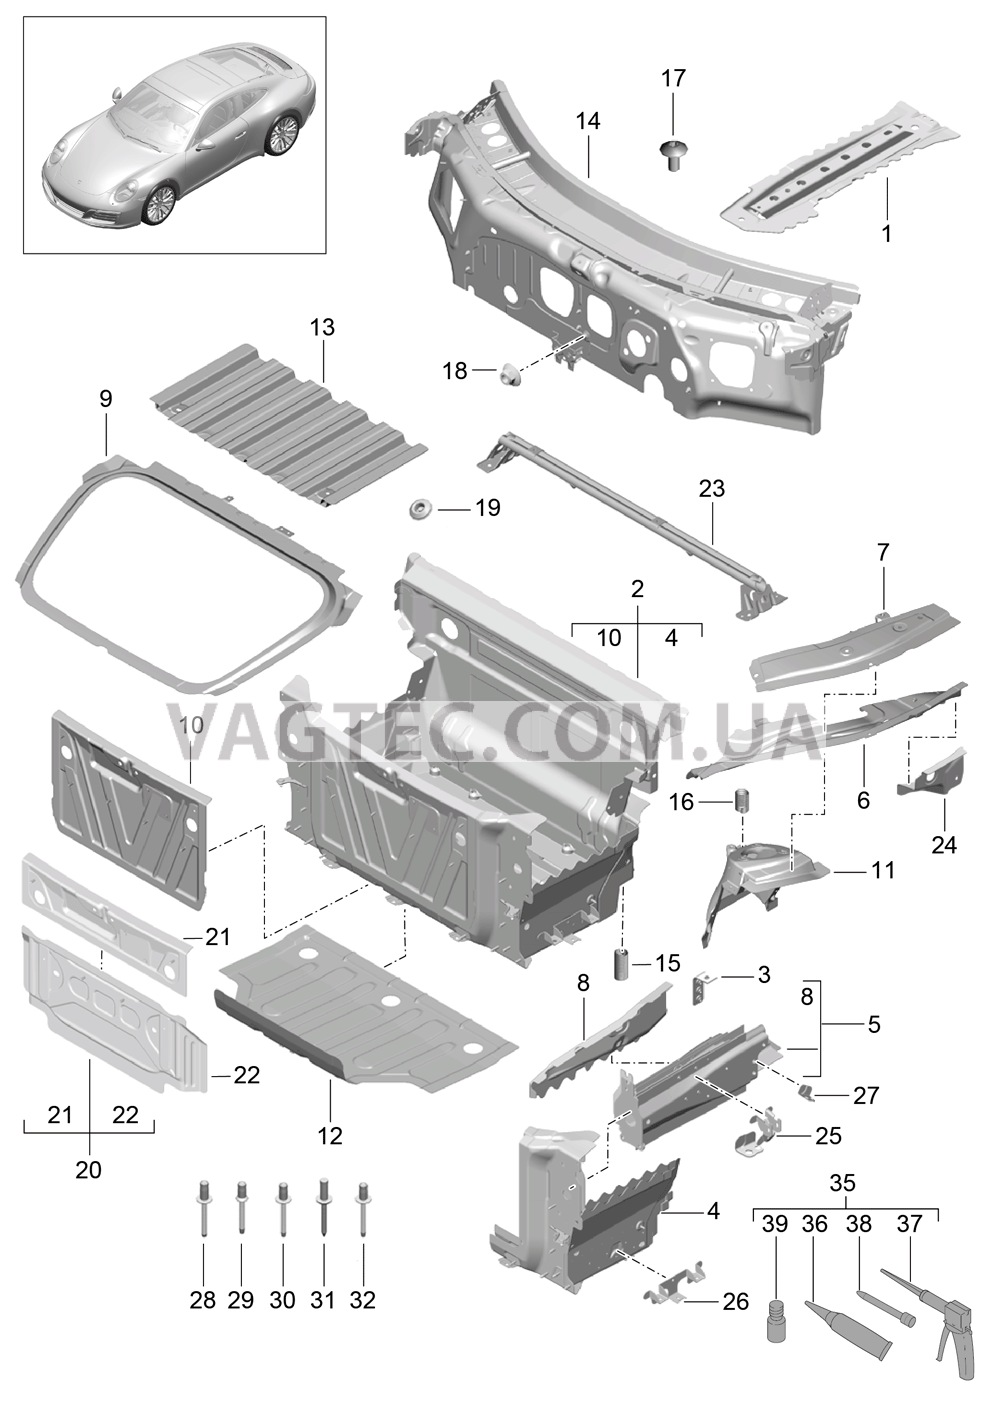 801-010 Передняя часть кузова, Отдельные детали для PORSCHE 911.Carrera 2017-2018USA